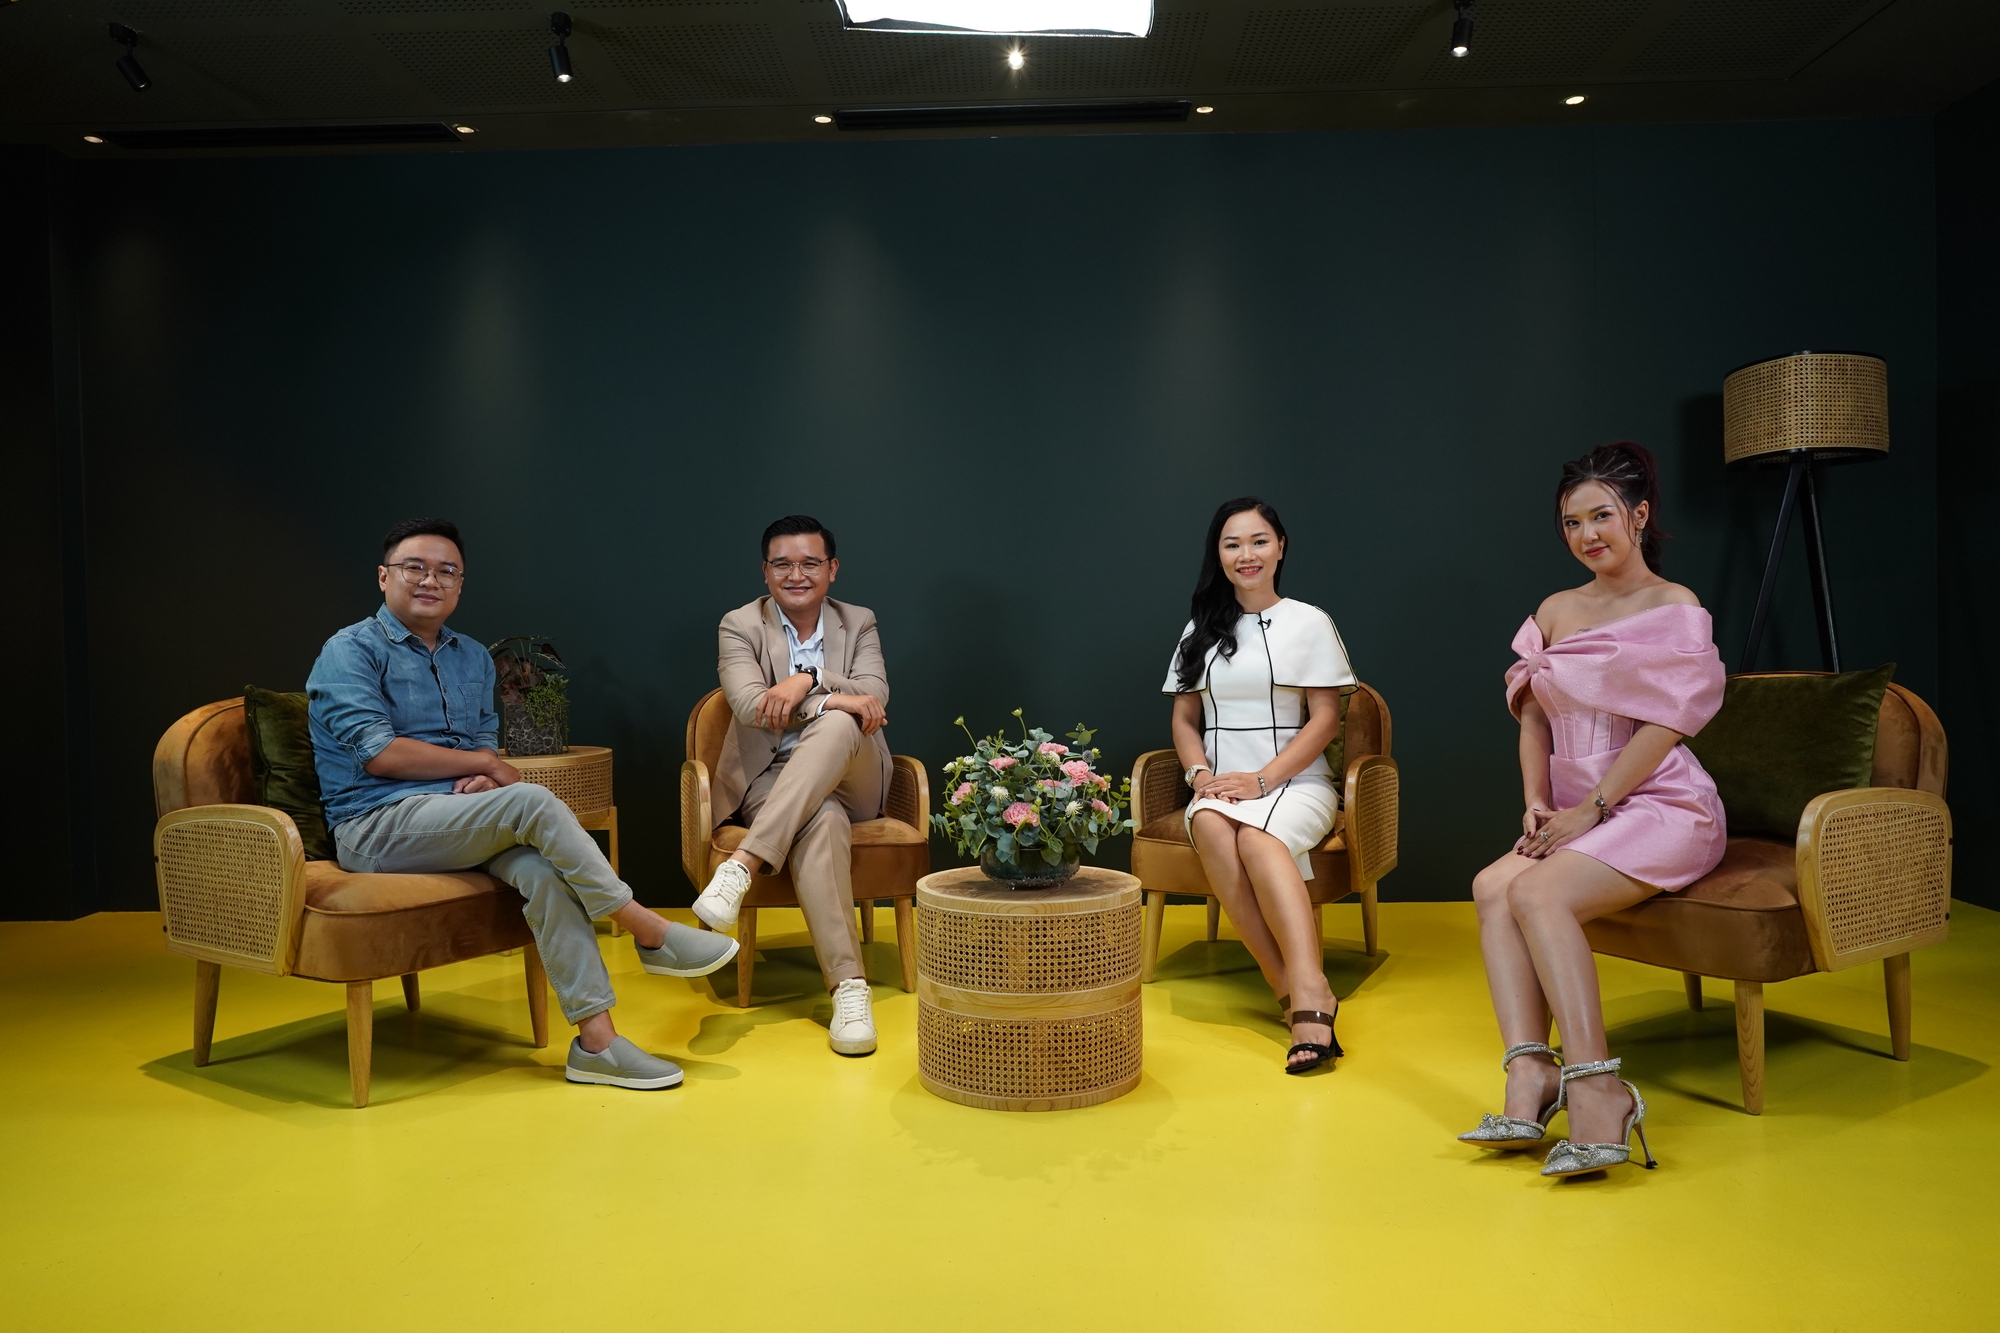 Đạo diễn Võ Thanh Hòa nói về cơ hội của phim Việt khi nền tảng giải trí trực tuyến lên ngôi - Ảnh 1.